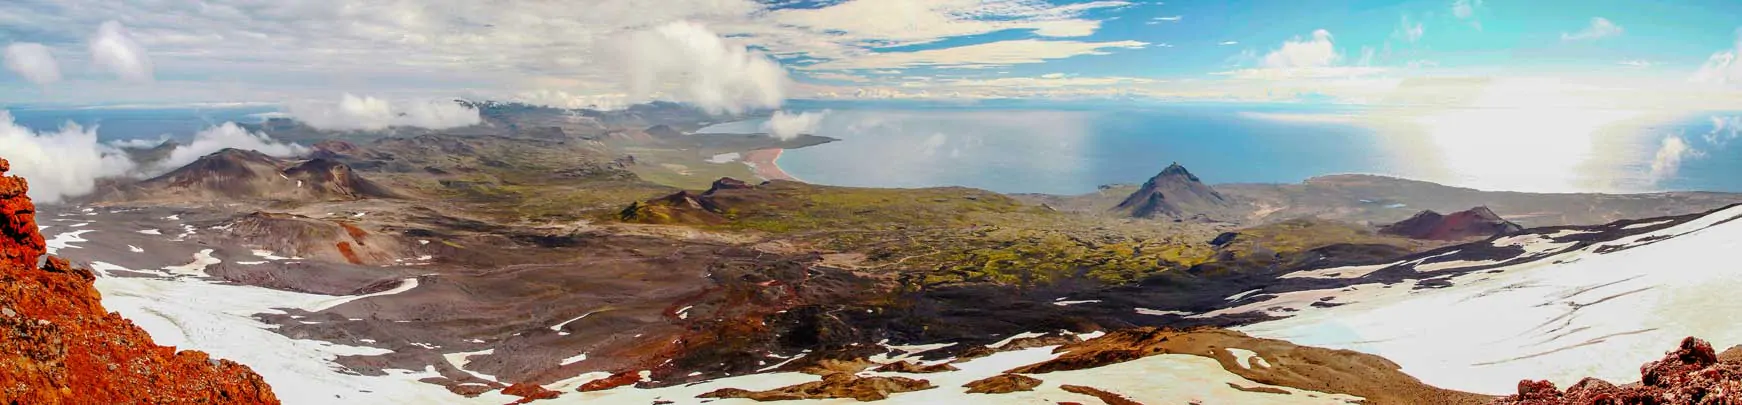 Sublime vue panoramique depuis le glacier Snaefellsjökull